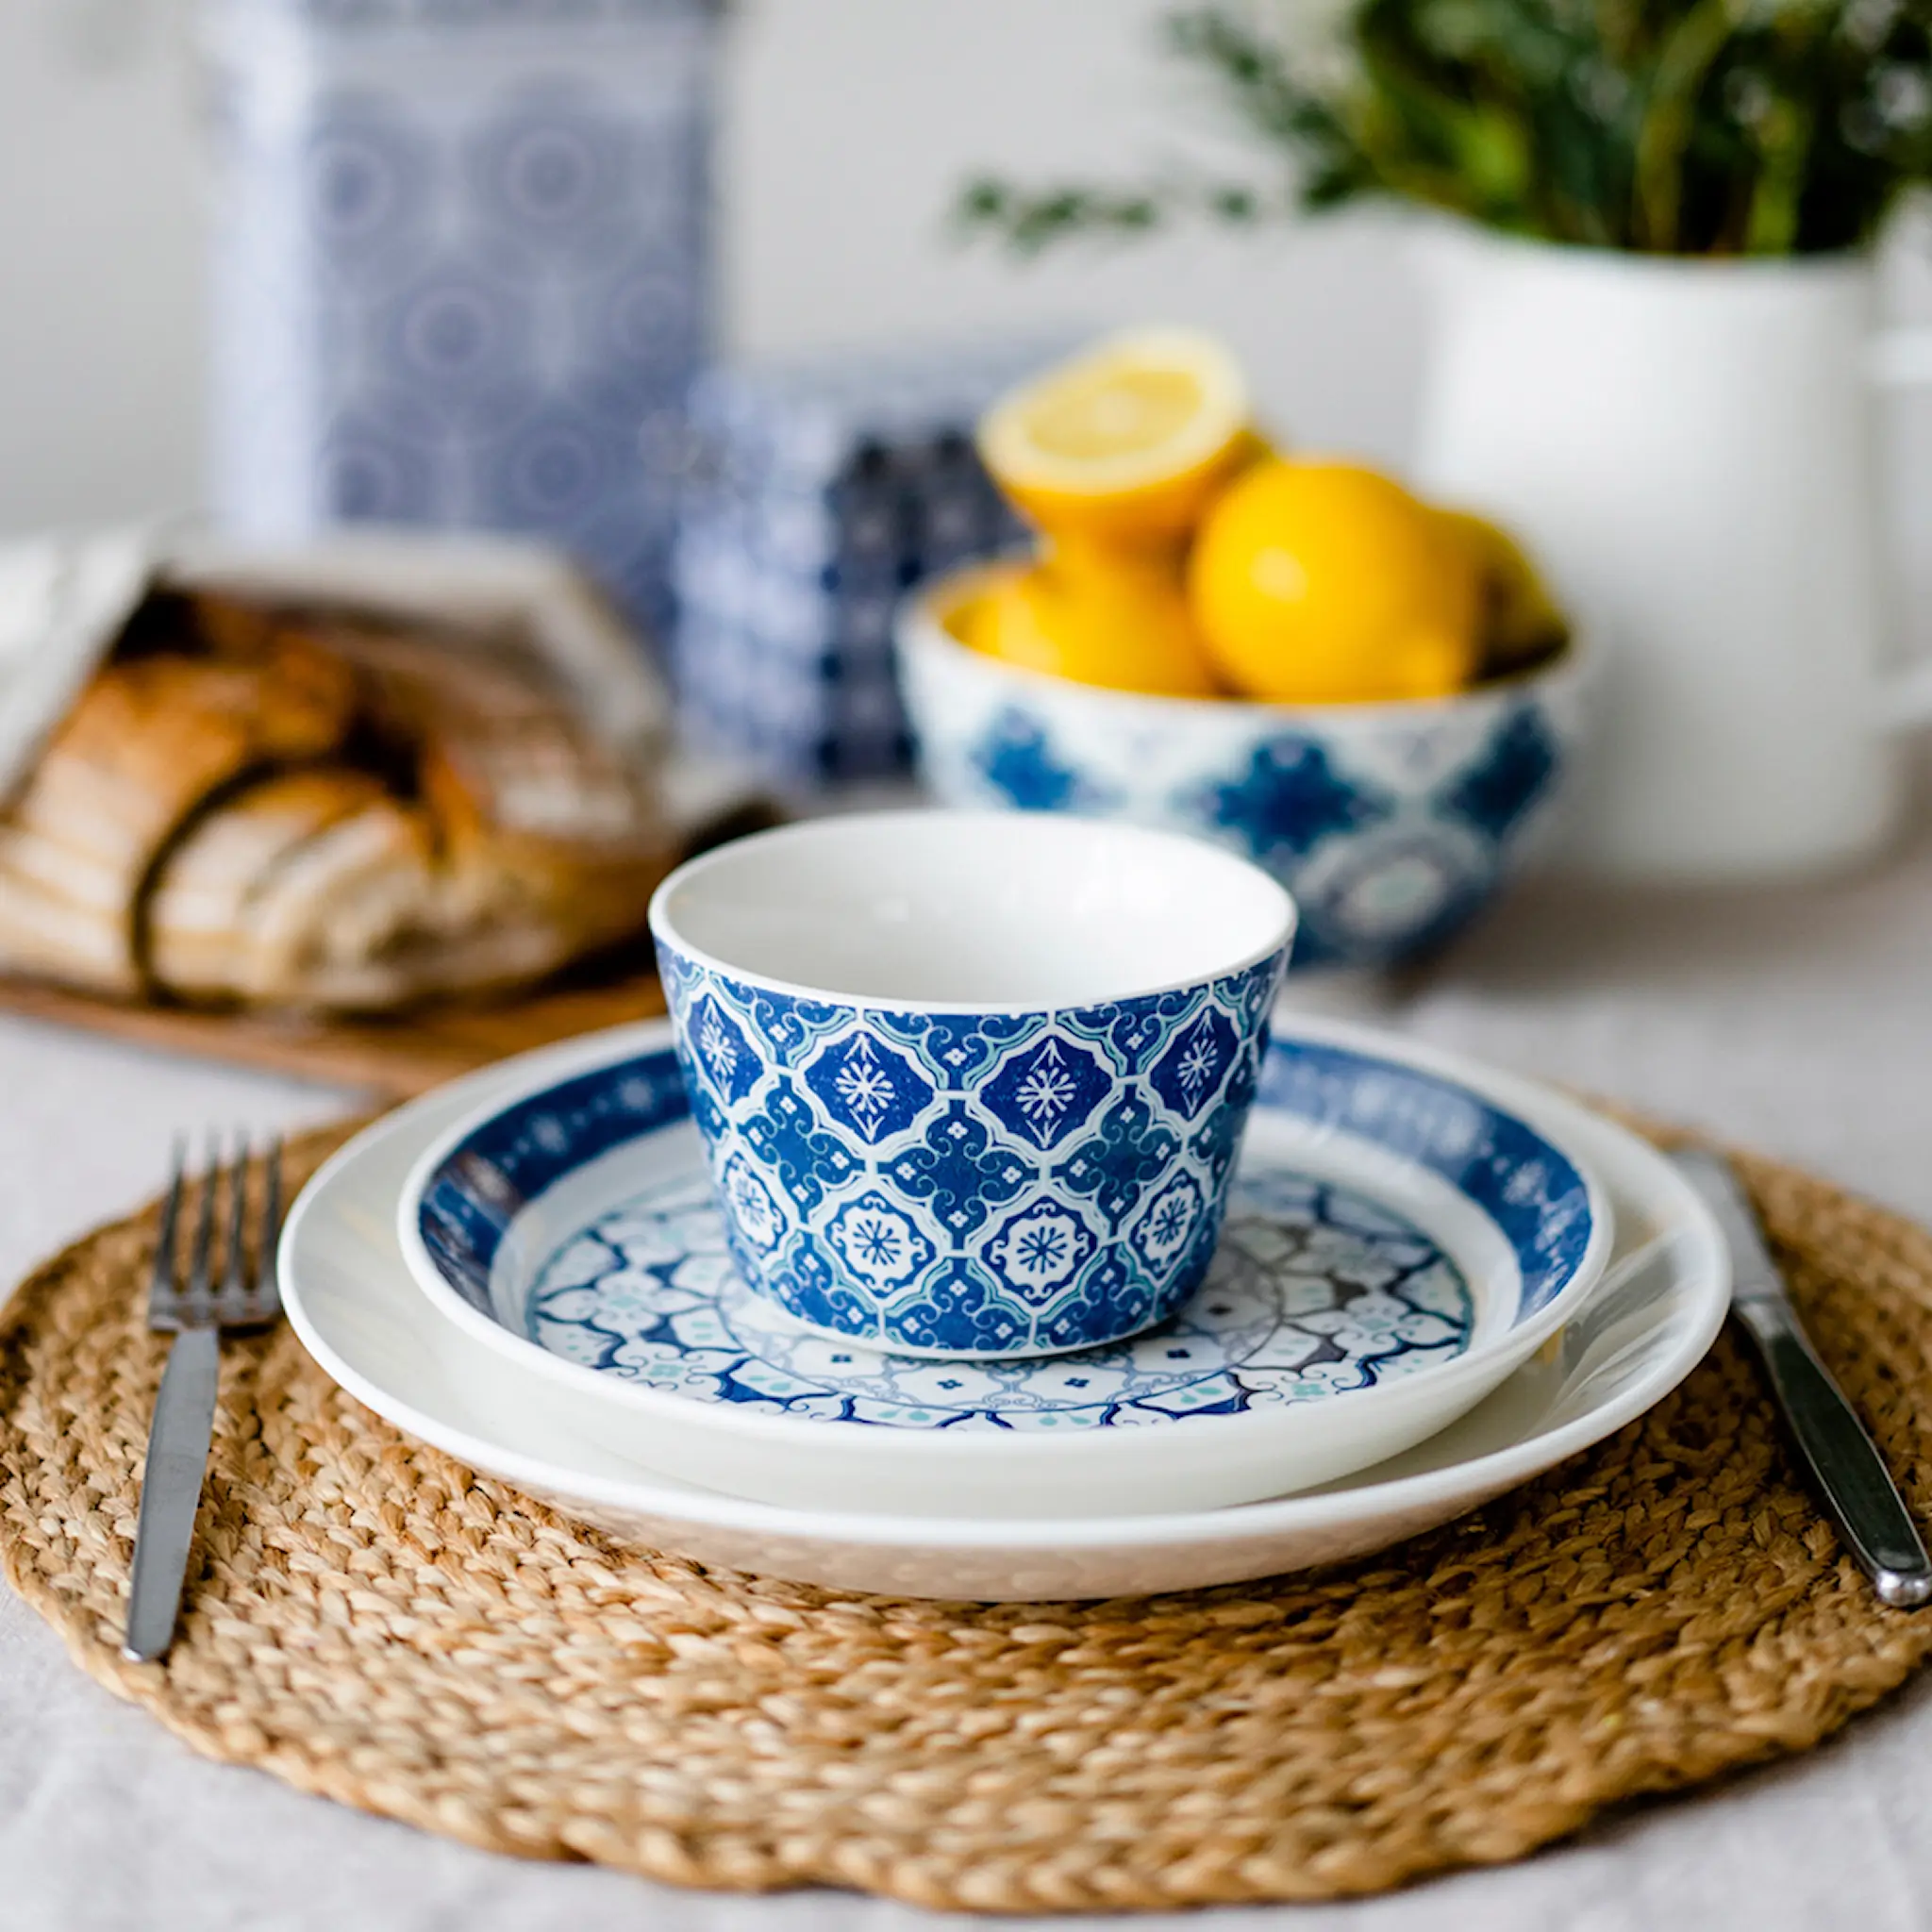 Moomin Santorini koti skål 35 cl blå/hvit